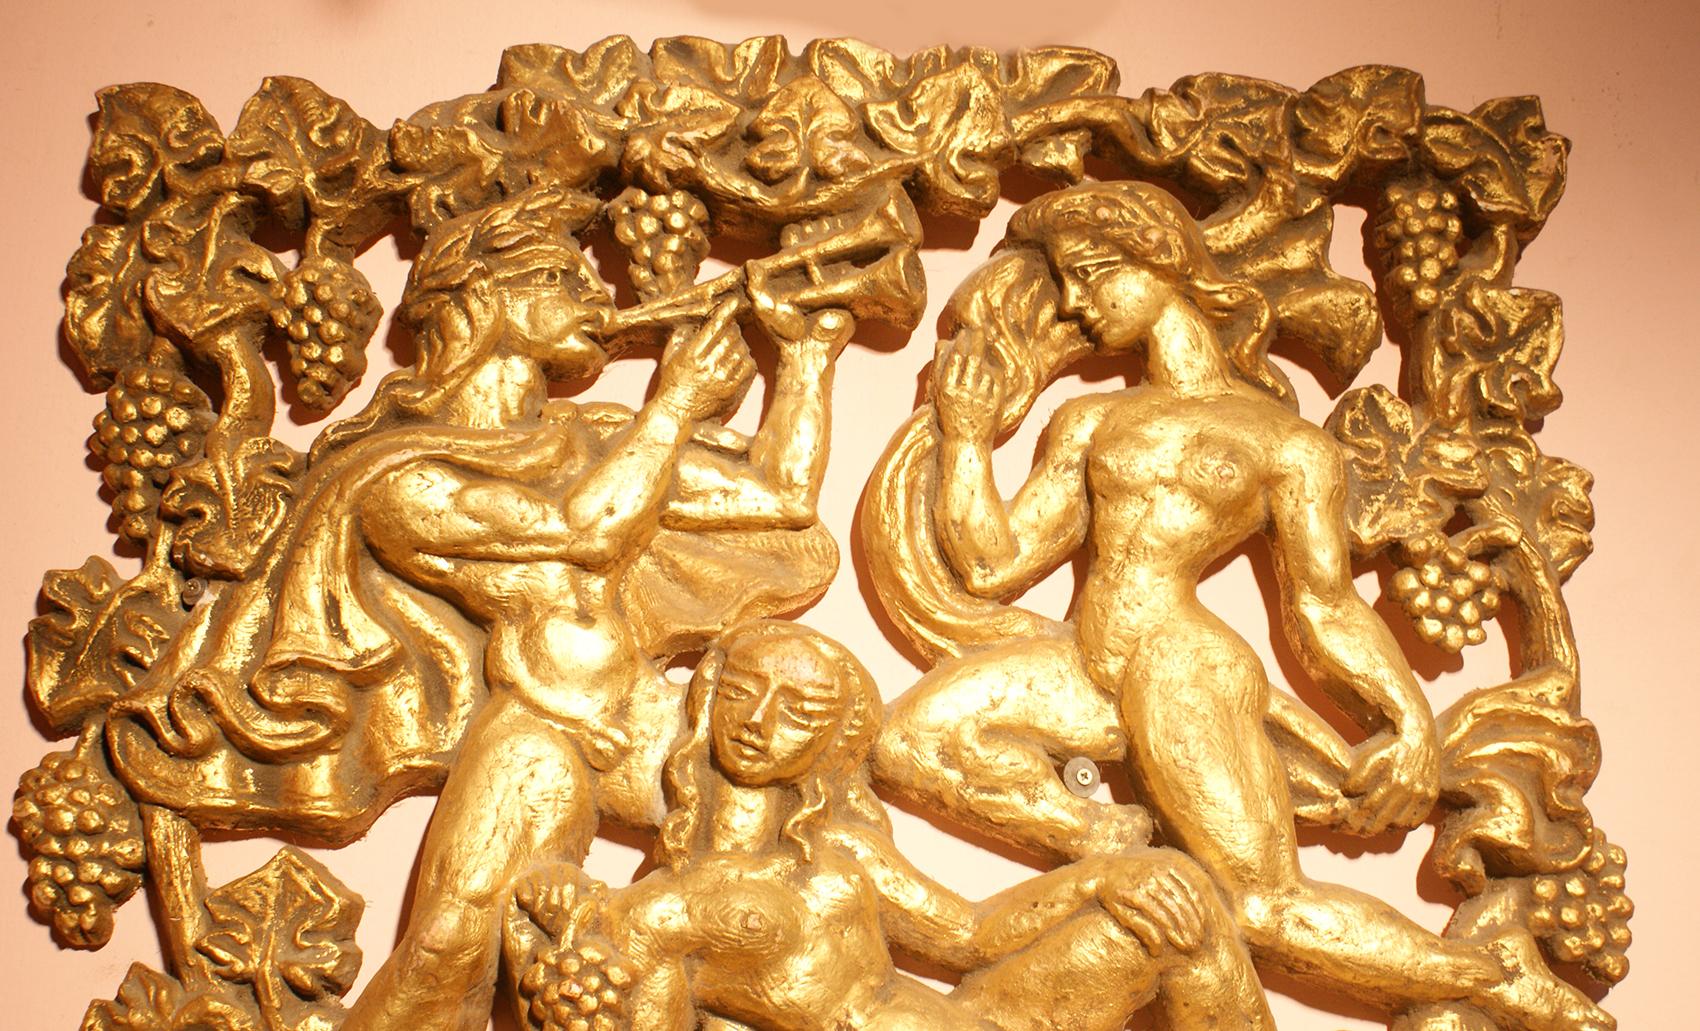 Dieses Stück zeigt ein Bild, das mythologische Kreaturen in Gipsrelief von zwei nackten Frauen und einem Mann, der Flöte spielt, umgeben von Weintrauben und Blättern in vergoldeter Farbe darstellt. 
Das Gipsrelief macht die Tafel aus jedem